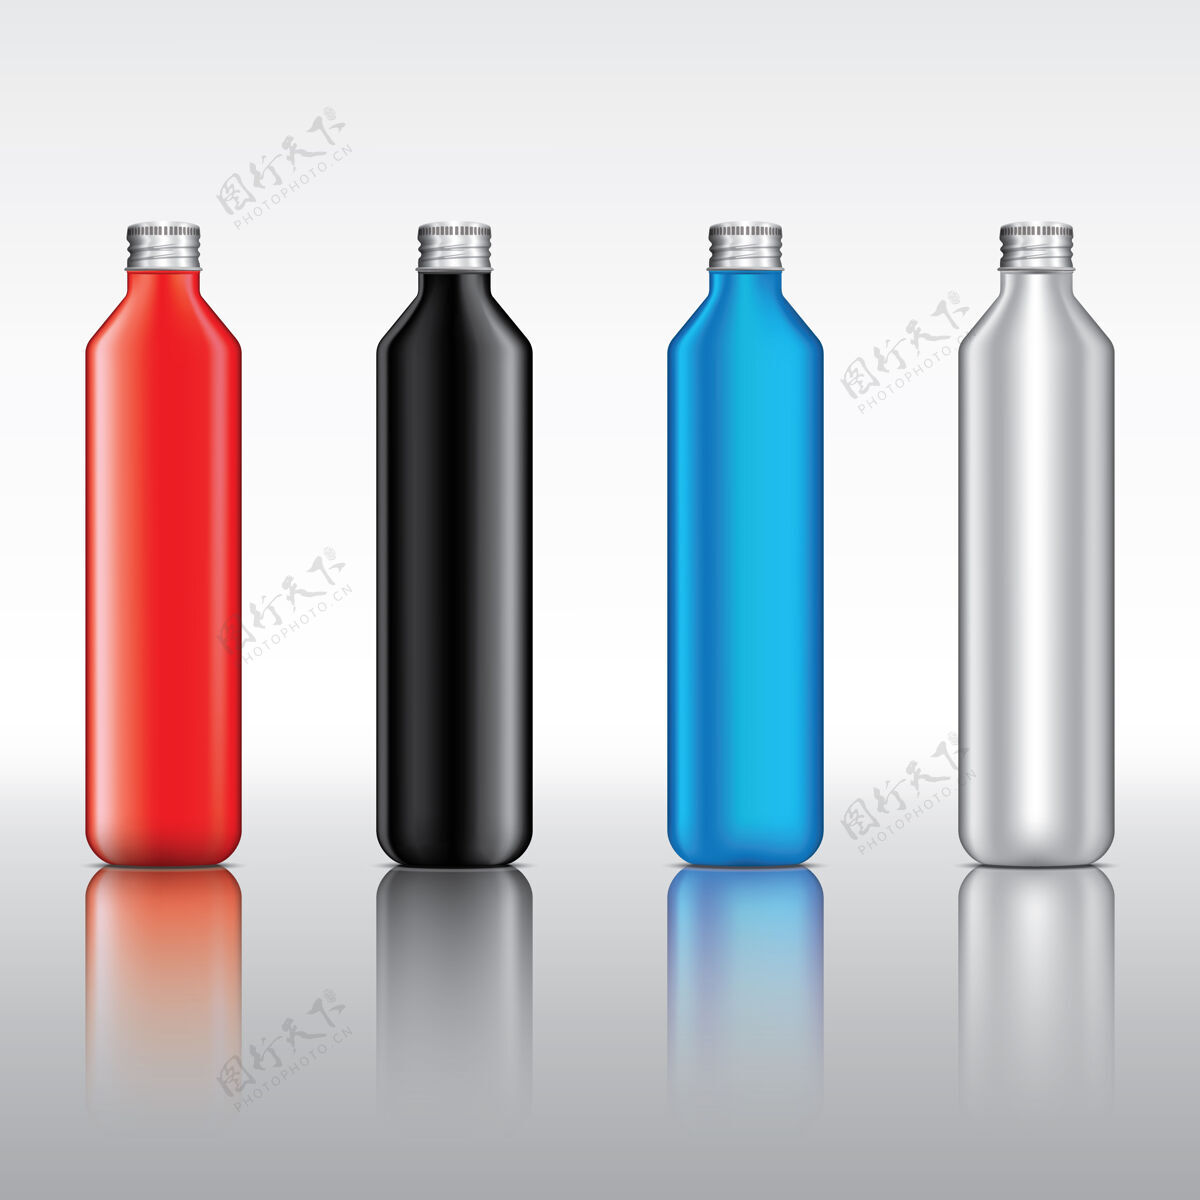 清晰浅色背景上的透明玻璃瓶和金属瓶盖食品包装化妆品